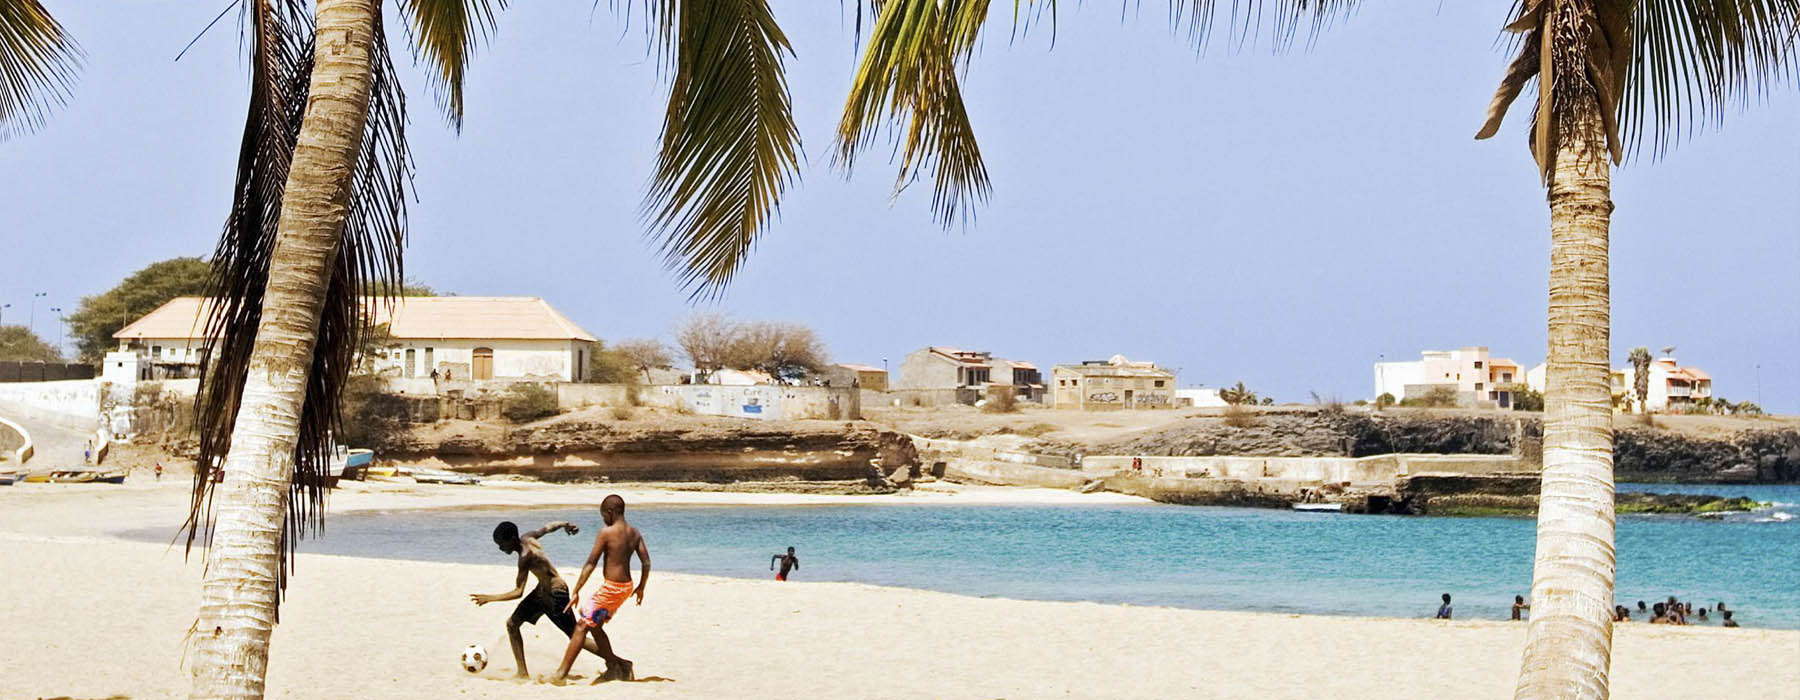 La plage mais pas seulement Cap Vert